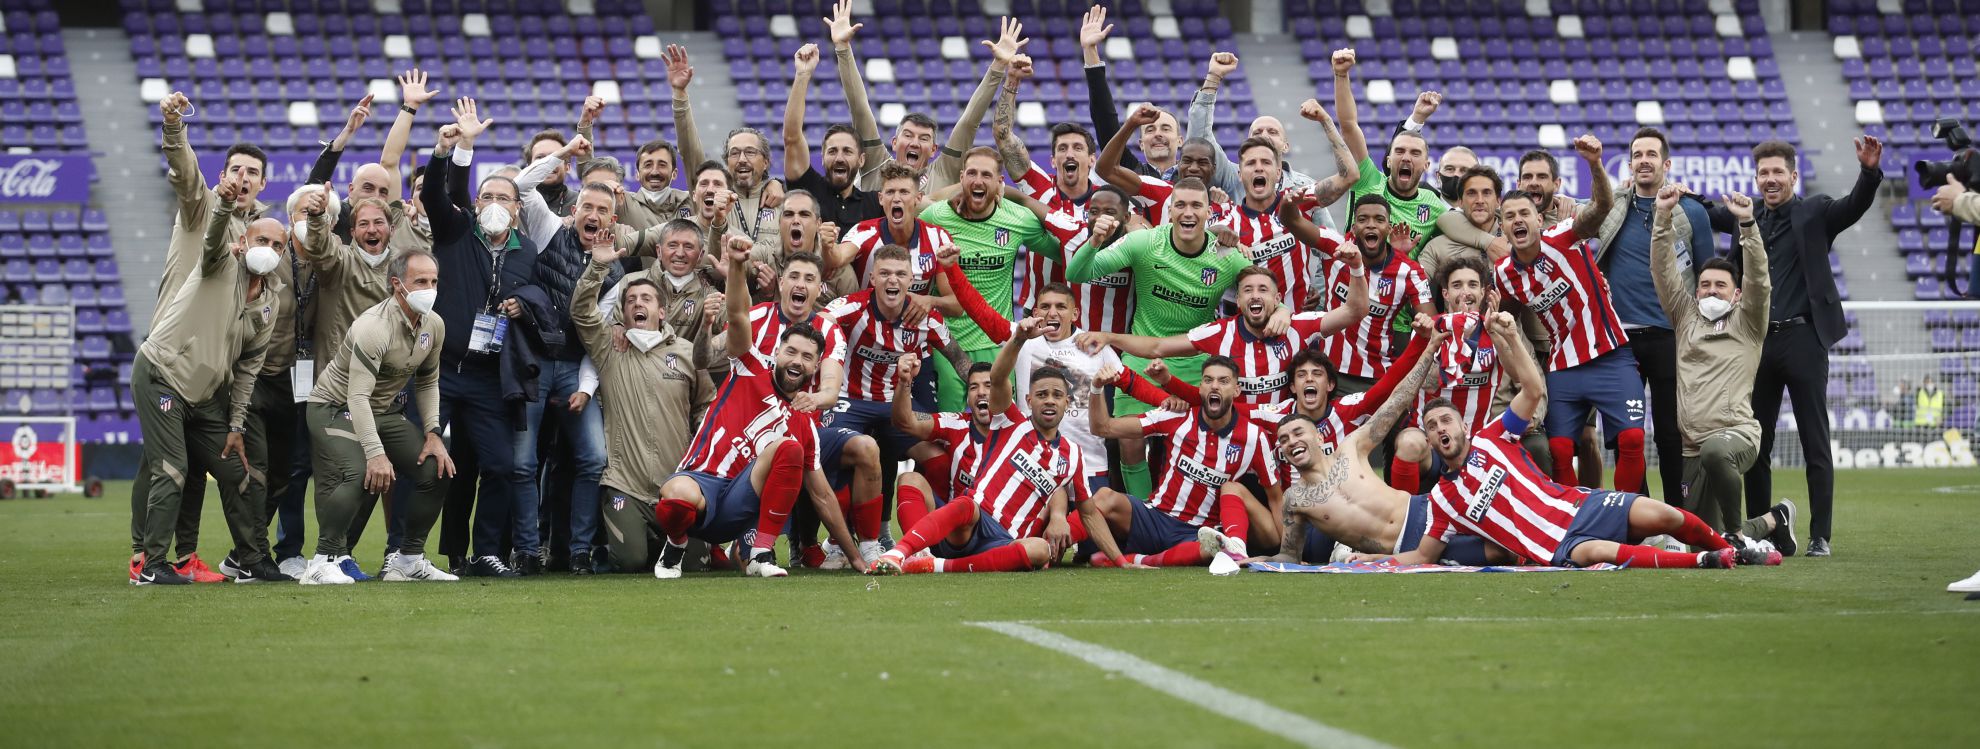 La plantilla del Atlético celebra el título de Liga en el césped de Zorrilla tras ganar al Valladolid.